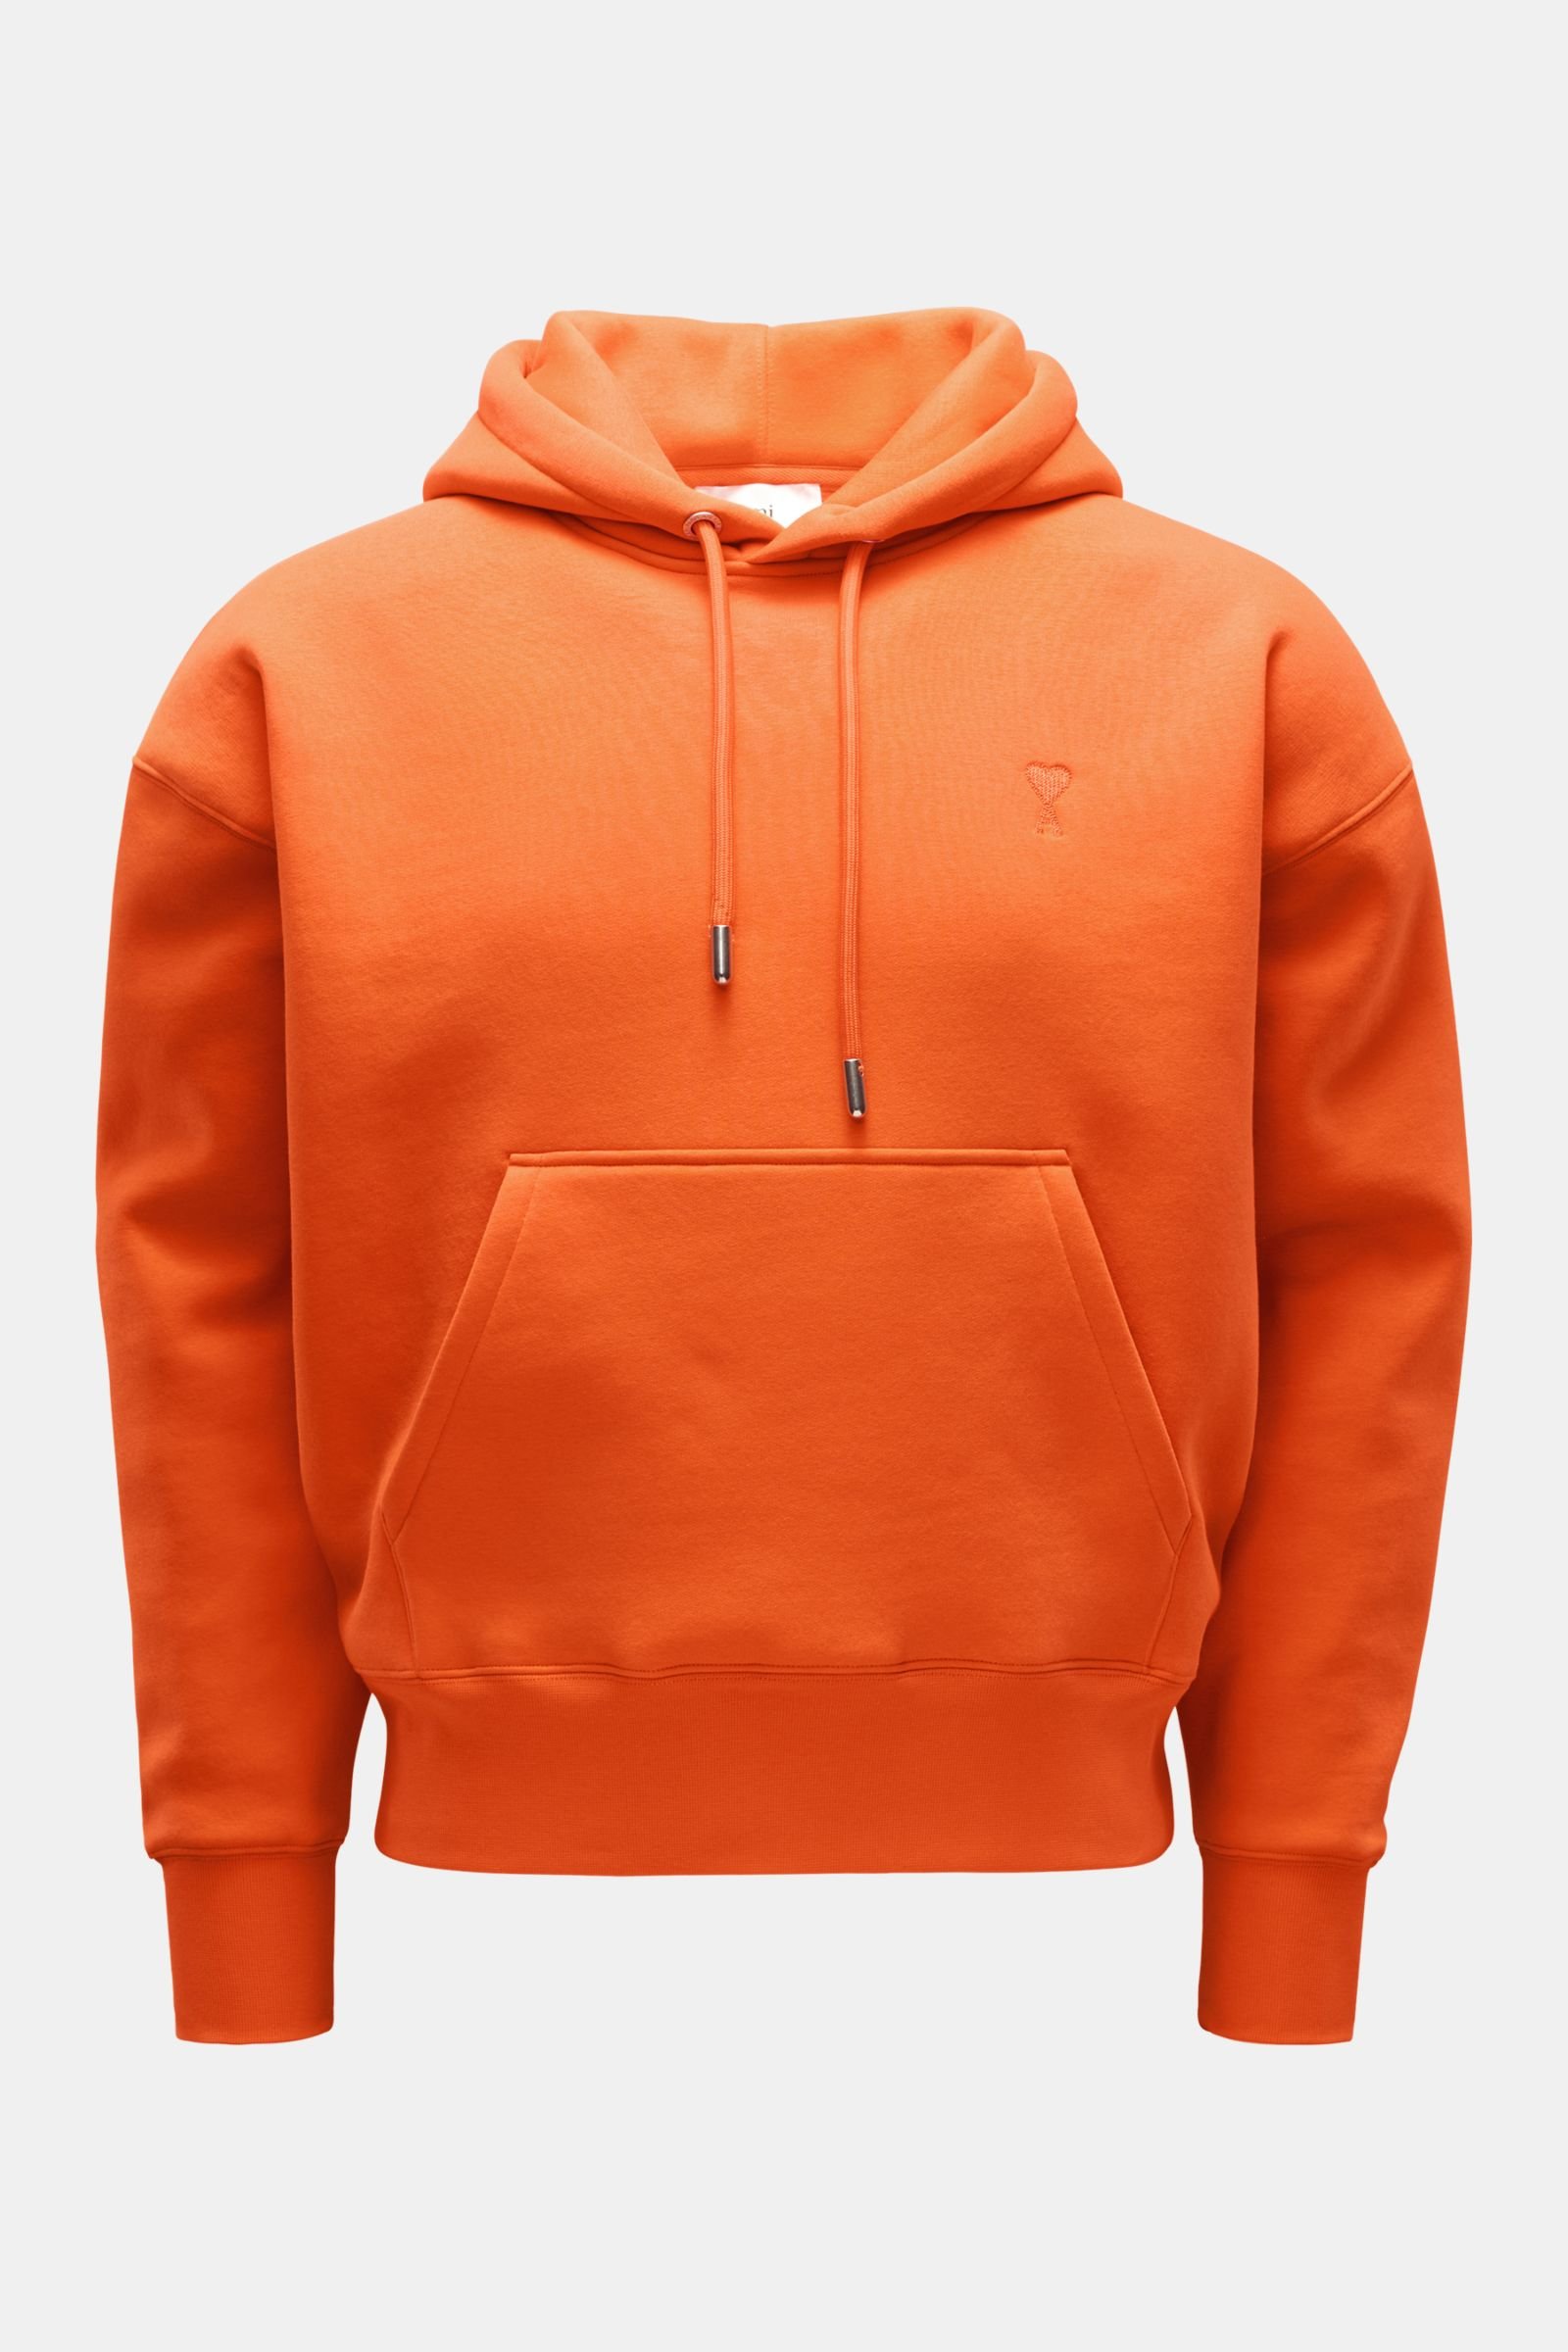 Neoprene hooded jumper orange